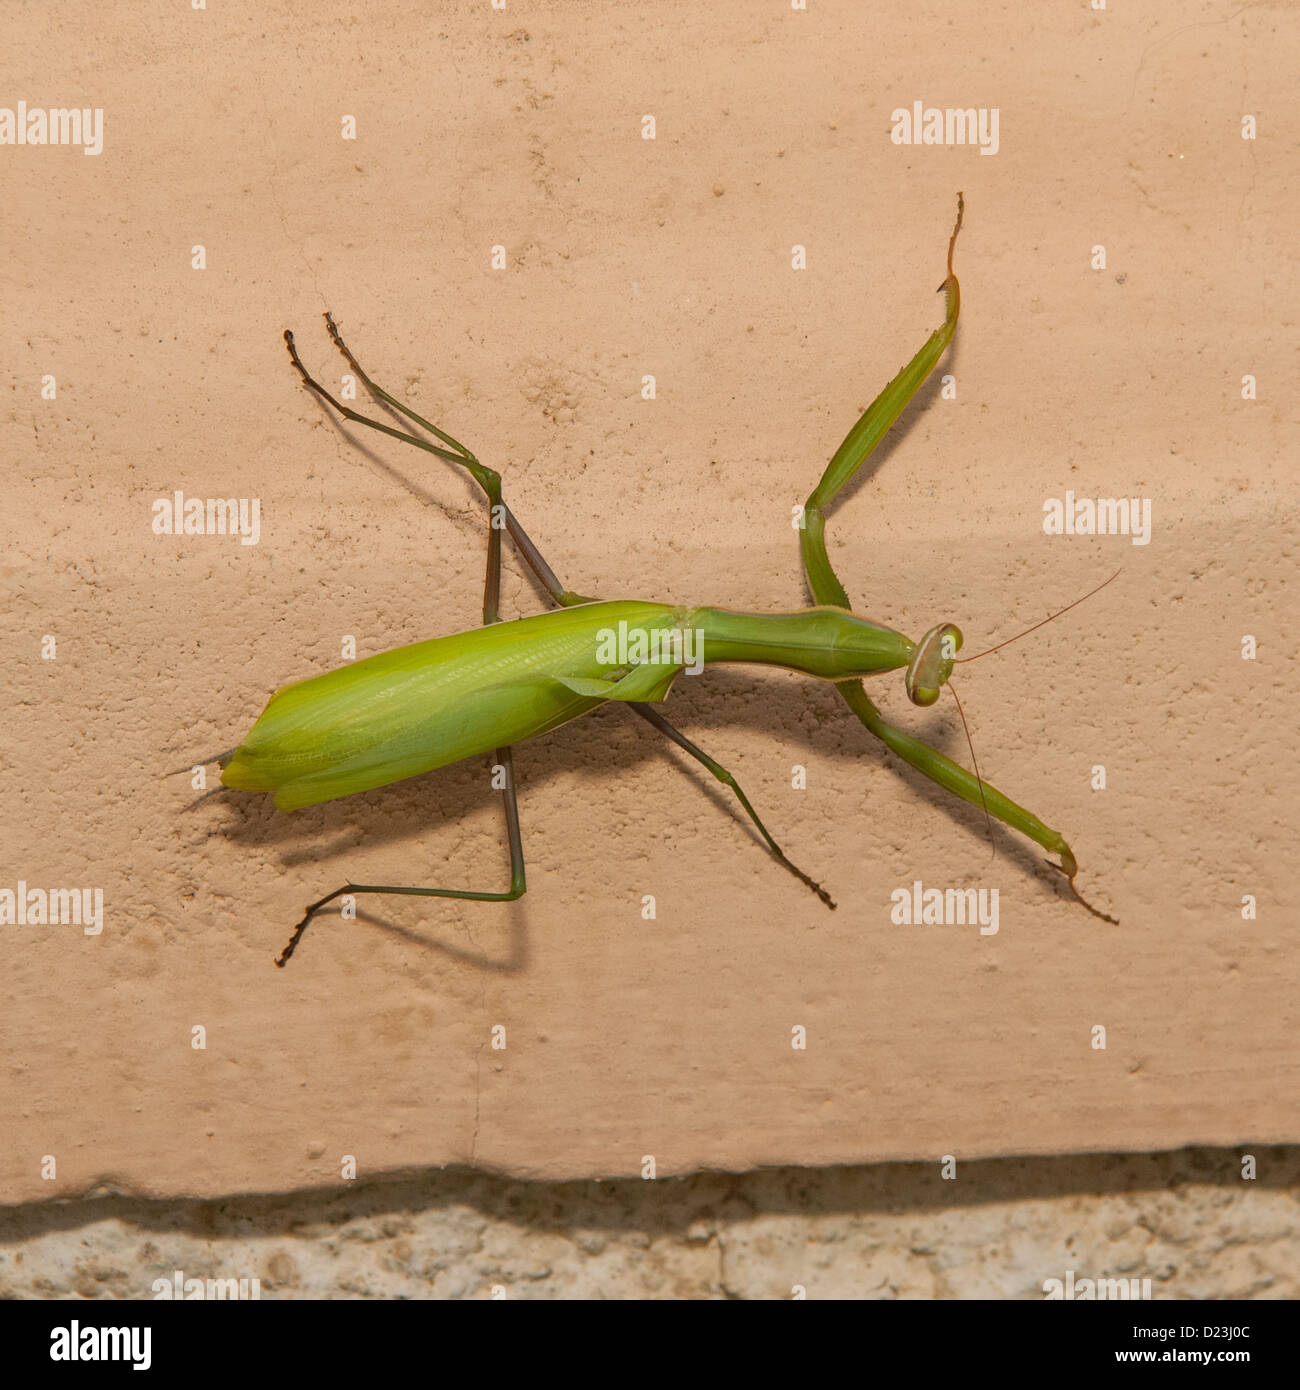 A European Praying Mantis ( Mantis religiosa ) in Spain Stock Photo